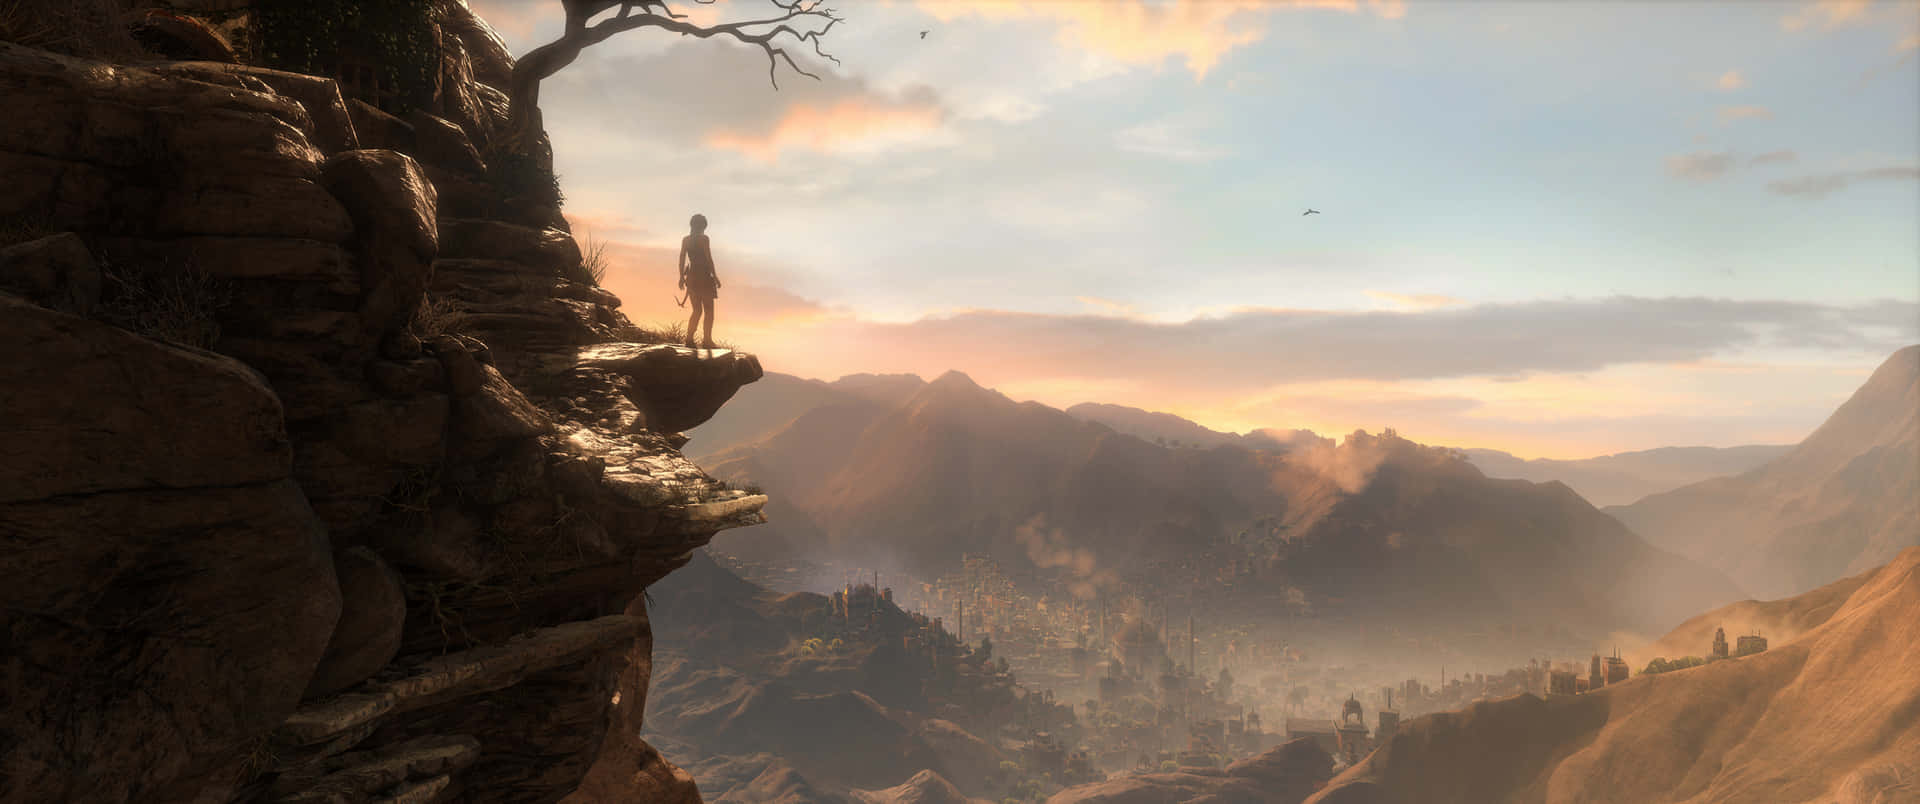 Laracroft Affronta Un'avventura Pericolosa In Rise Of The Tomb Raider